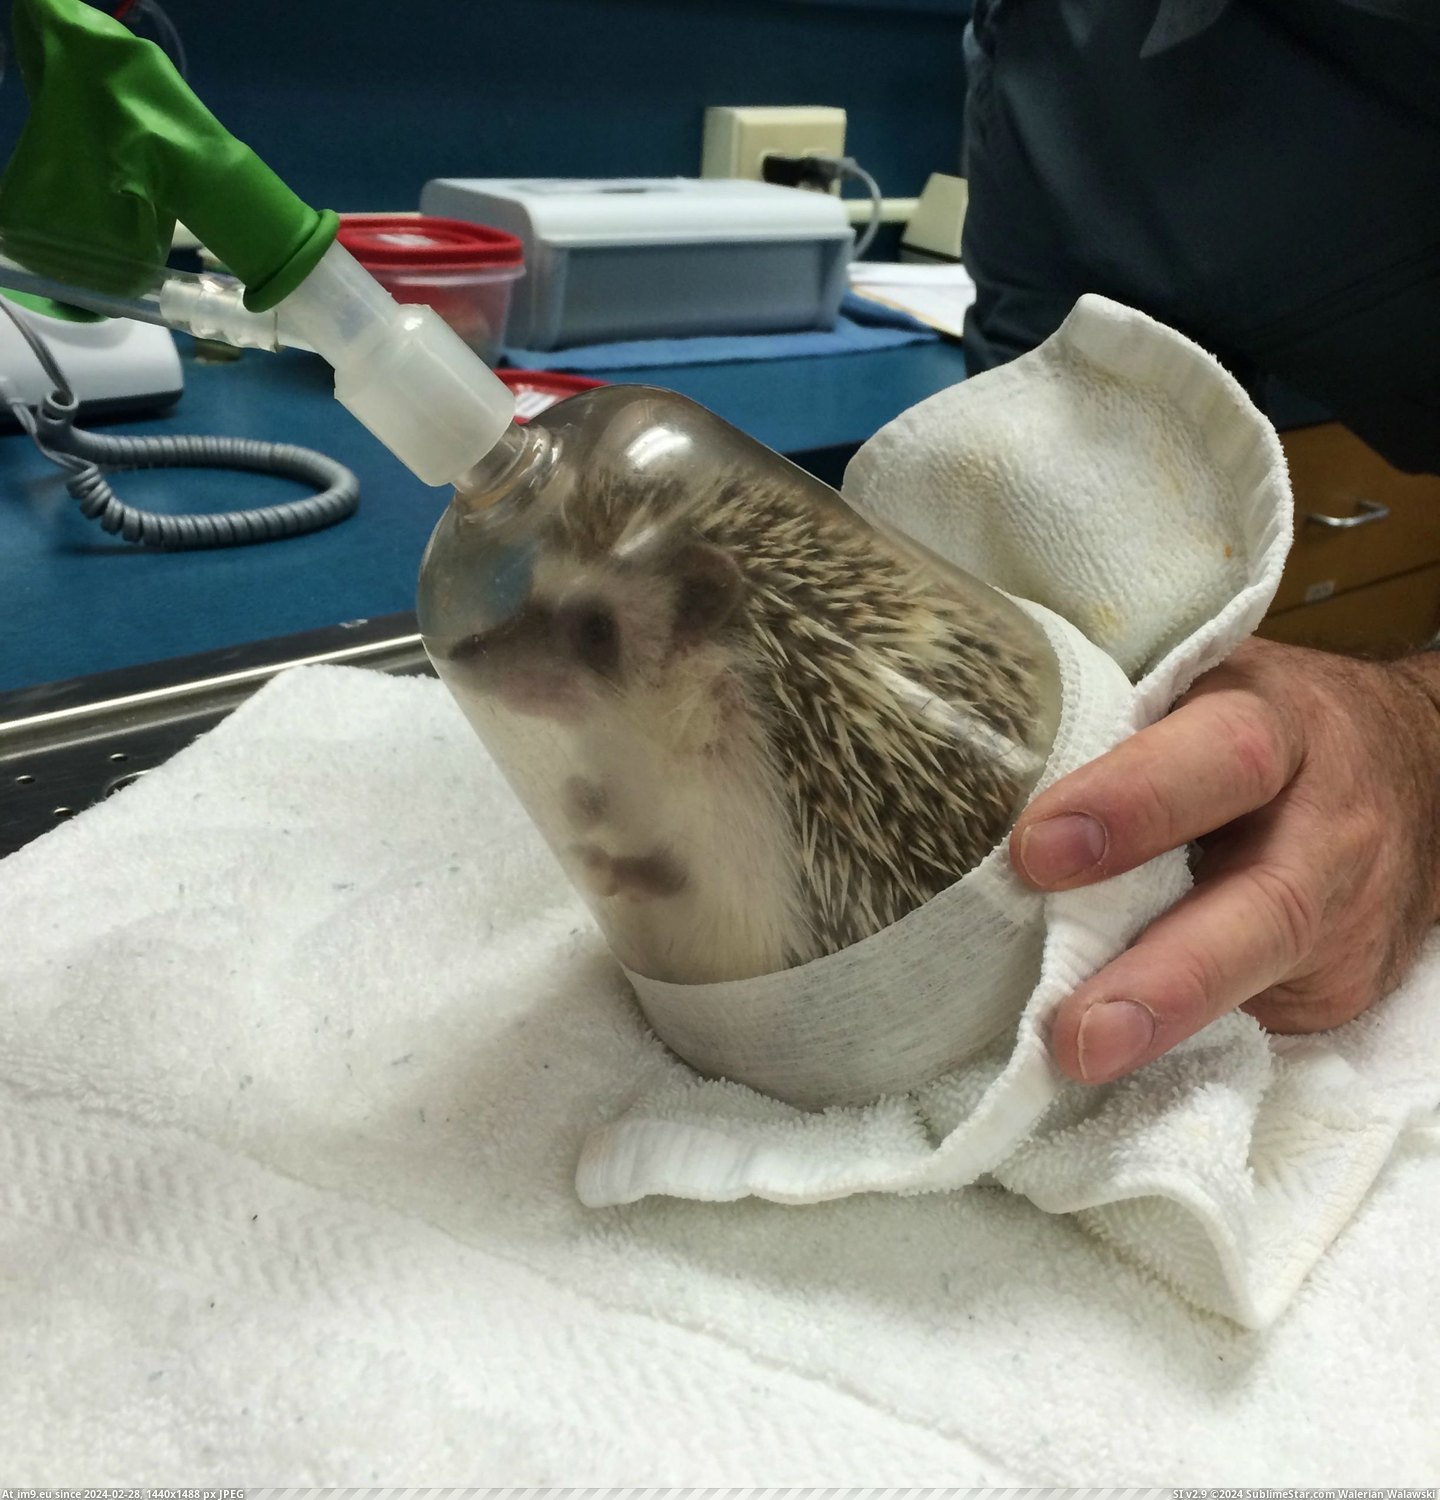 #Album #Oral #Anesthesia #Hedgehog #Exam [Aww] My hedgehog just had anesthesia for an oral exam [album] 5 Pic. (Bild von album My r/AWW favs))